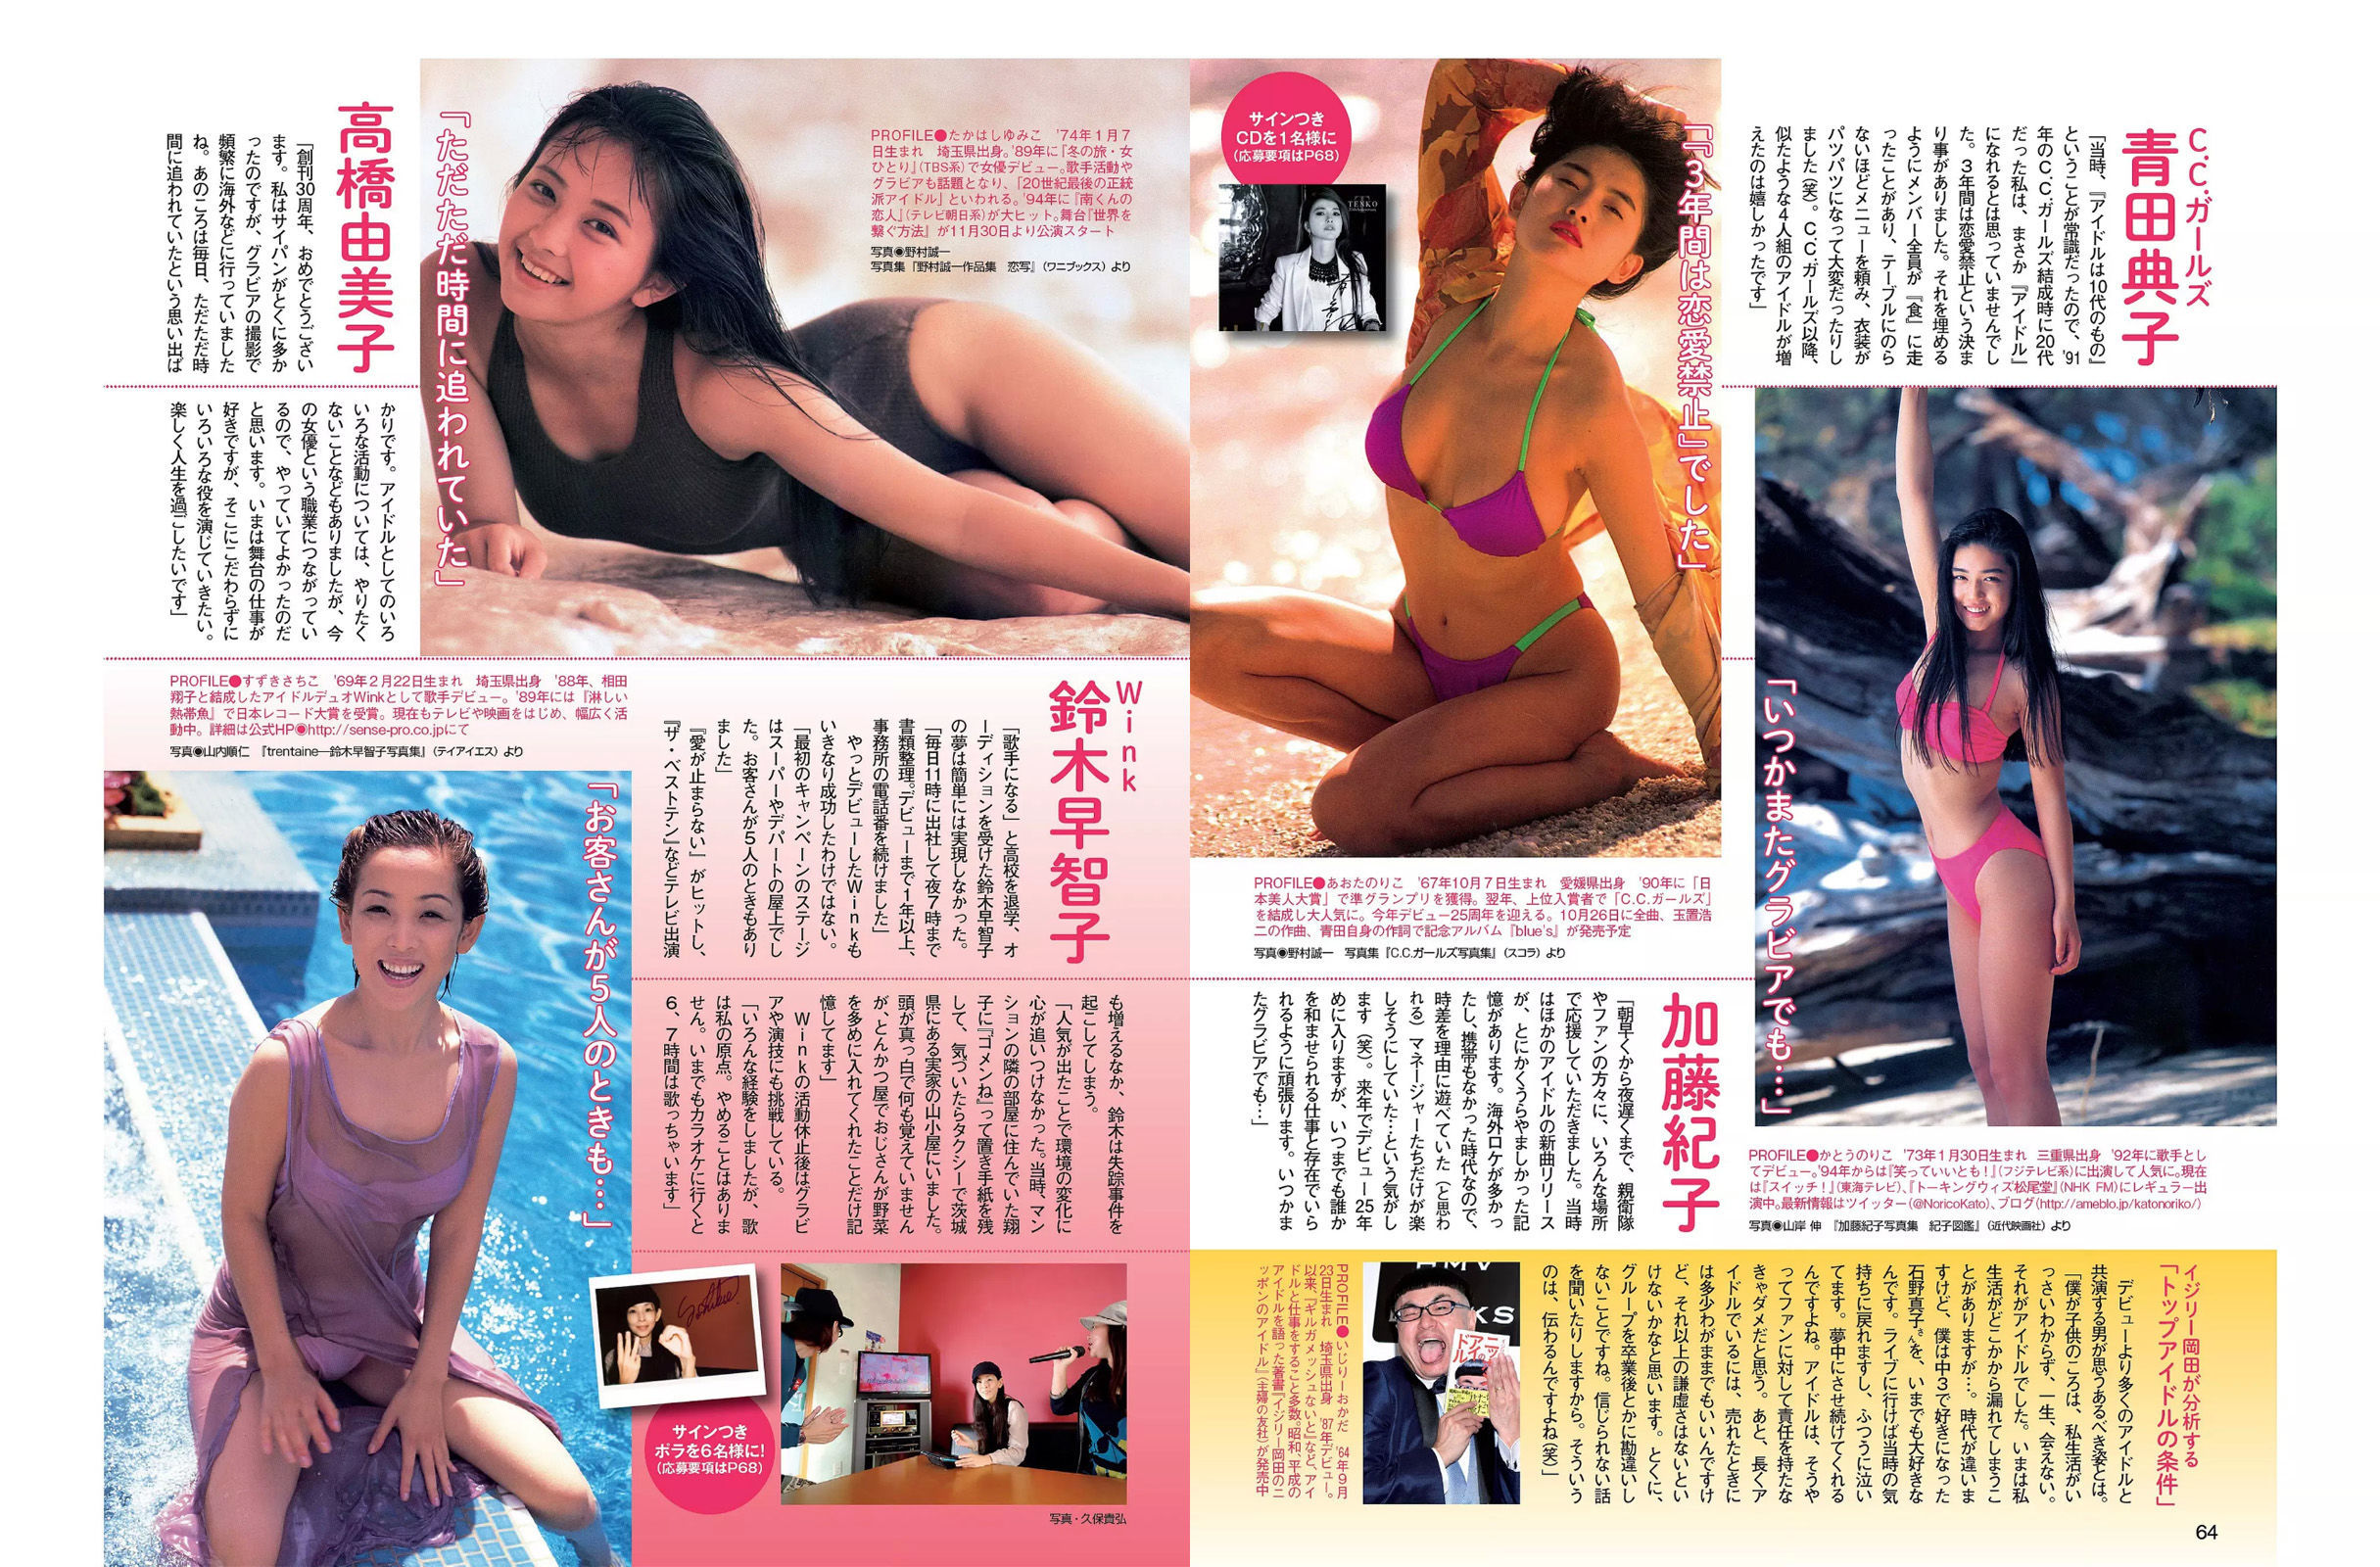 [FLASH] Ai Okawa Rina Sawayama Miyu Yamamoto Shoko Hamada Sario Okada 2016.11.01 Foto Seite 3 No.34a793